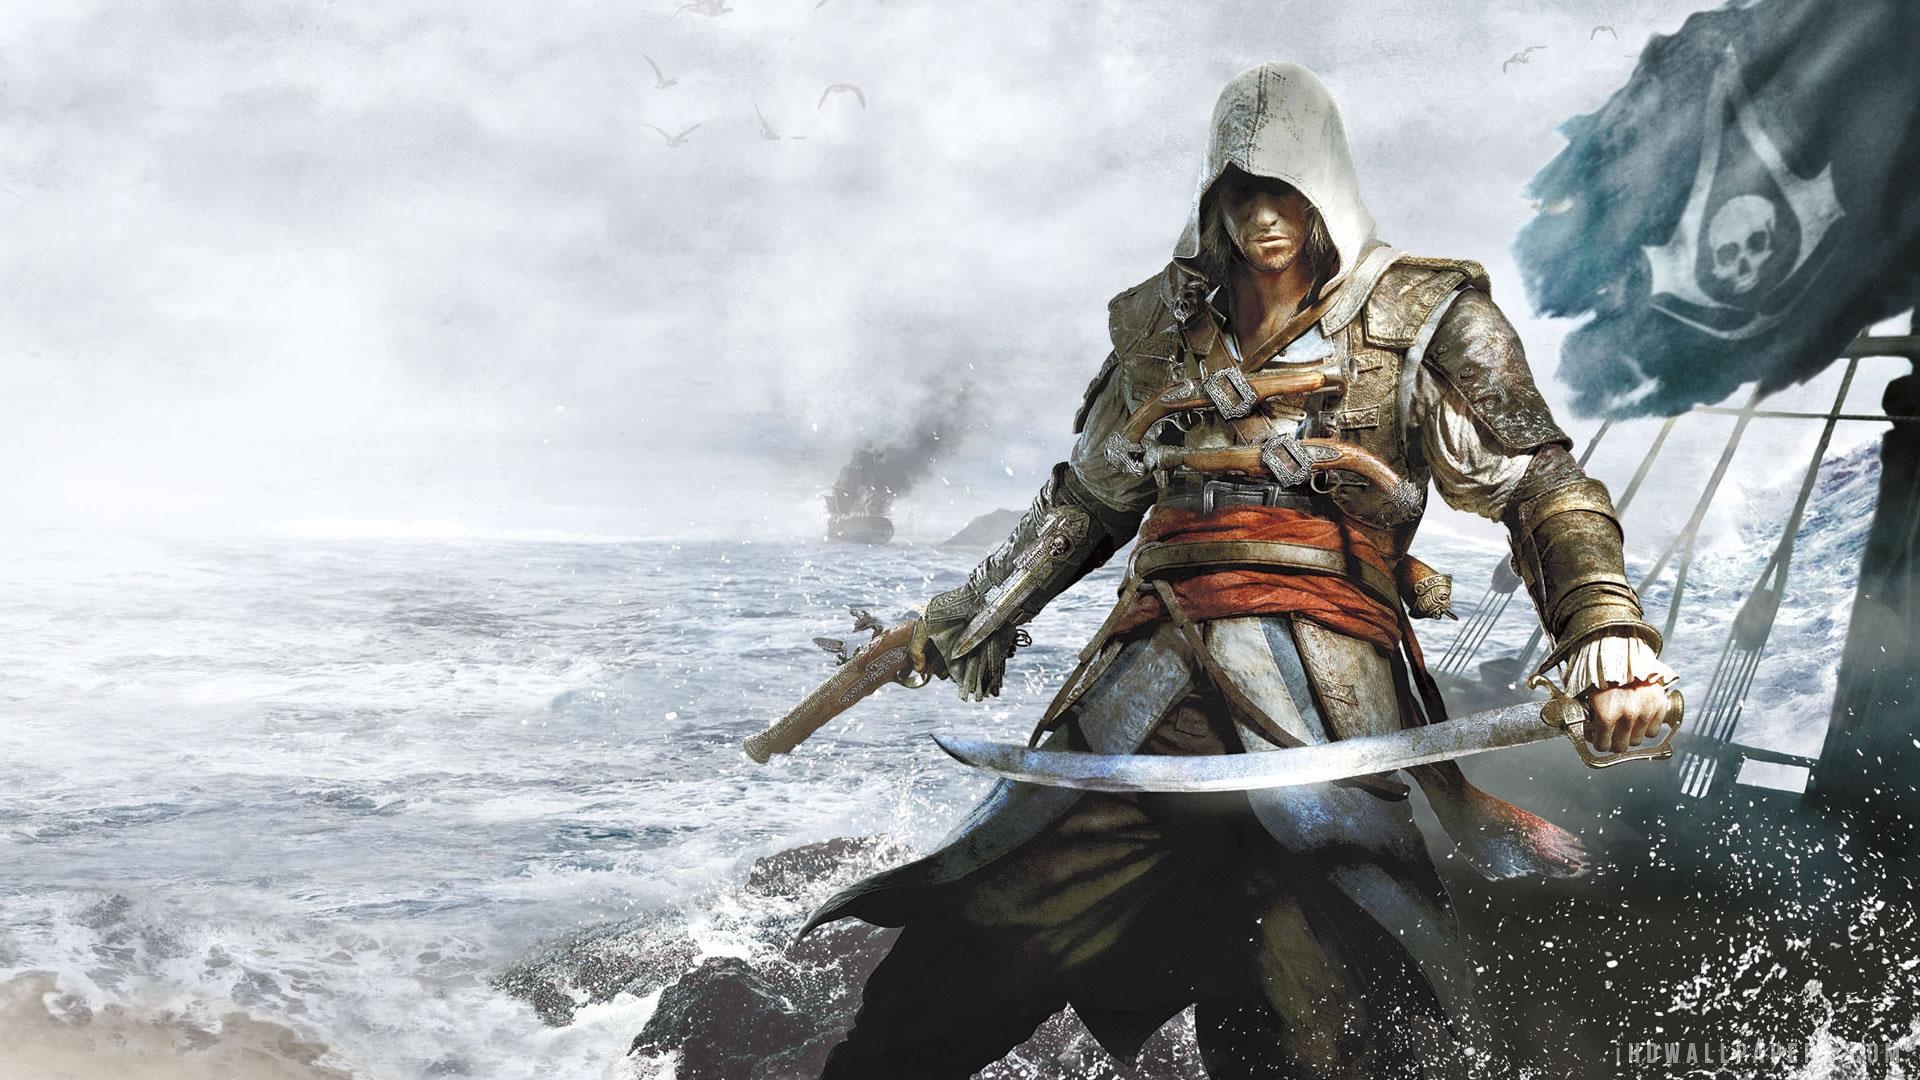 Fondos De Pantalla Assassin S Creed Assassins